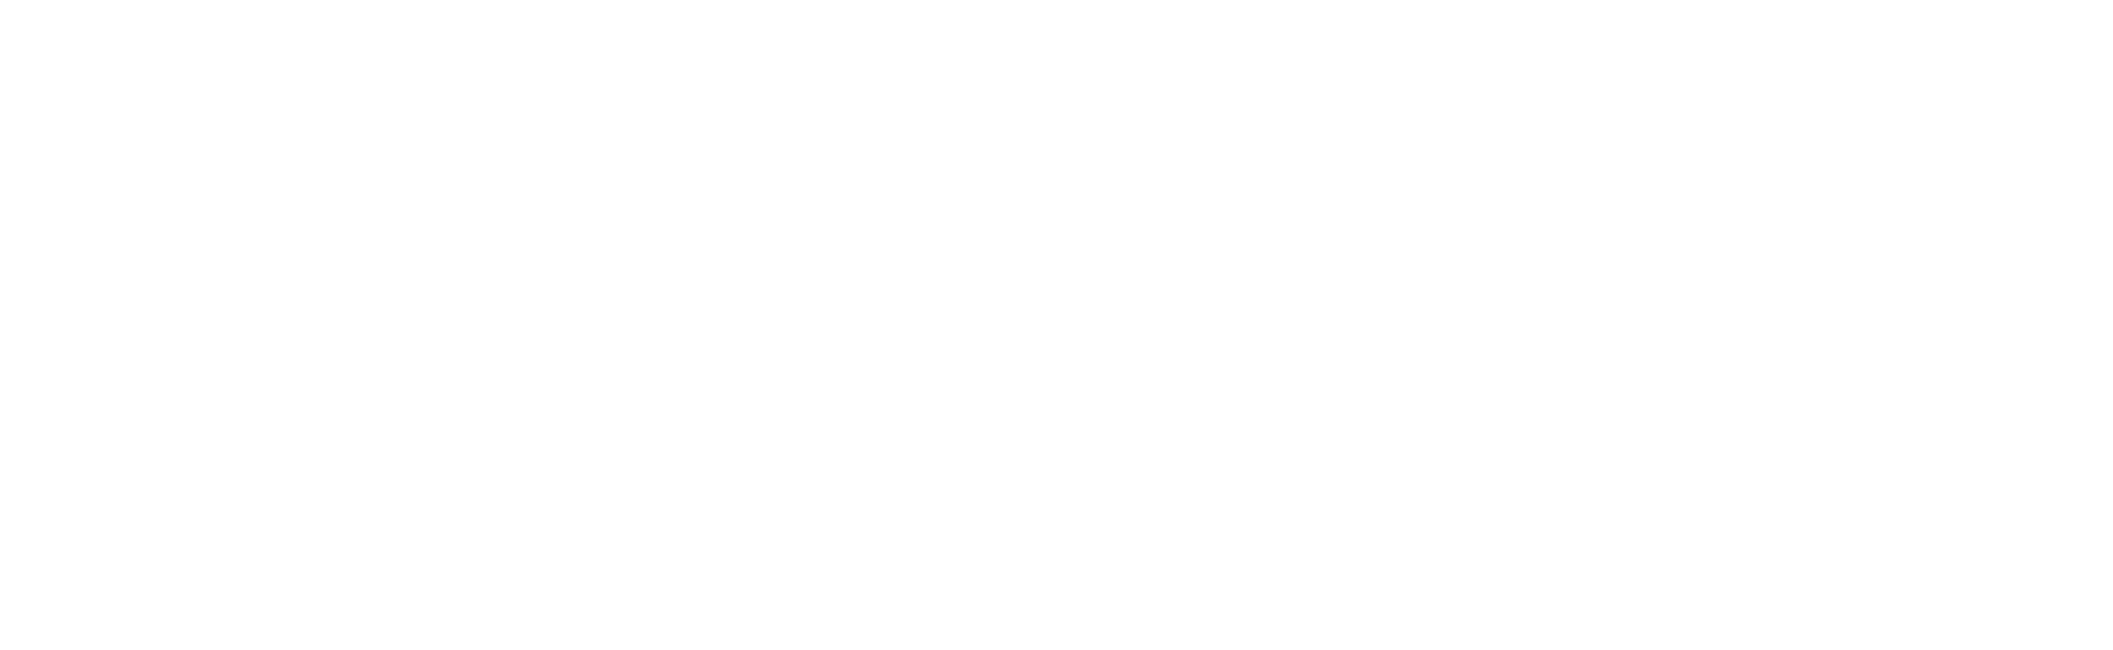 trans bilal logo white